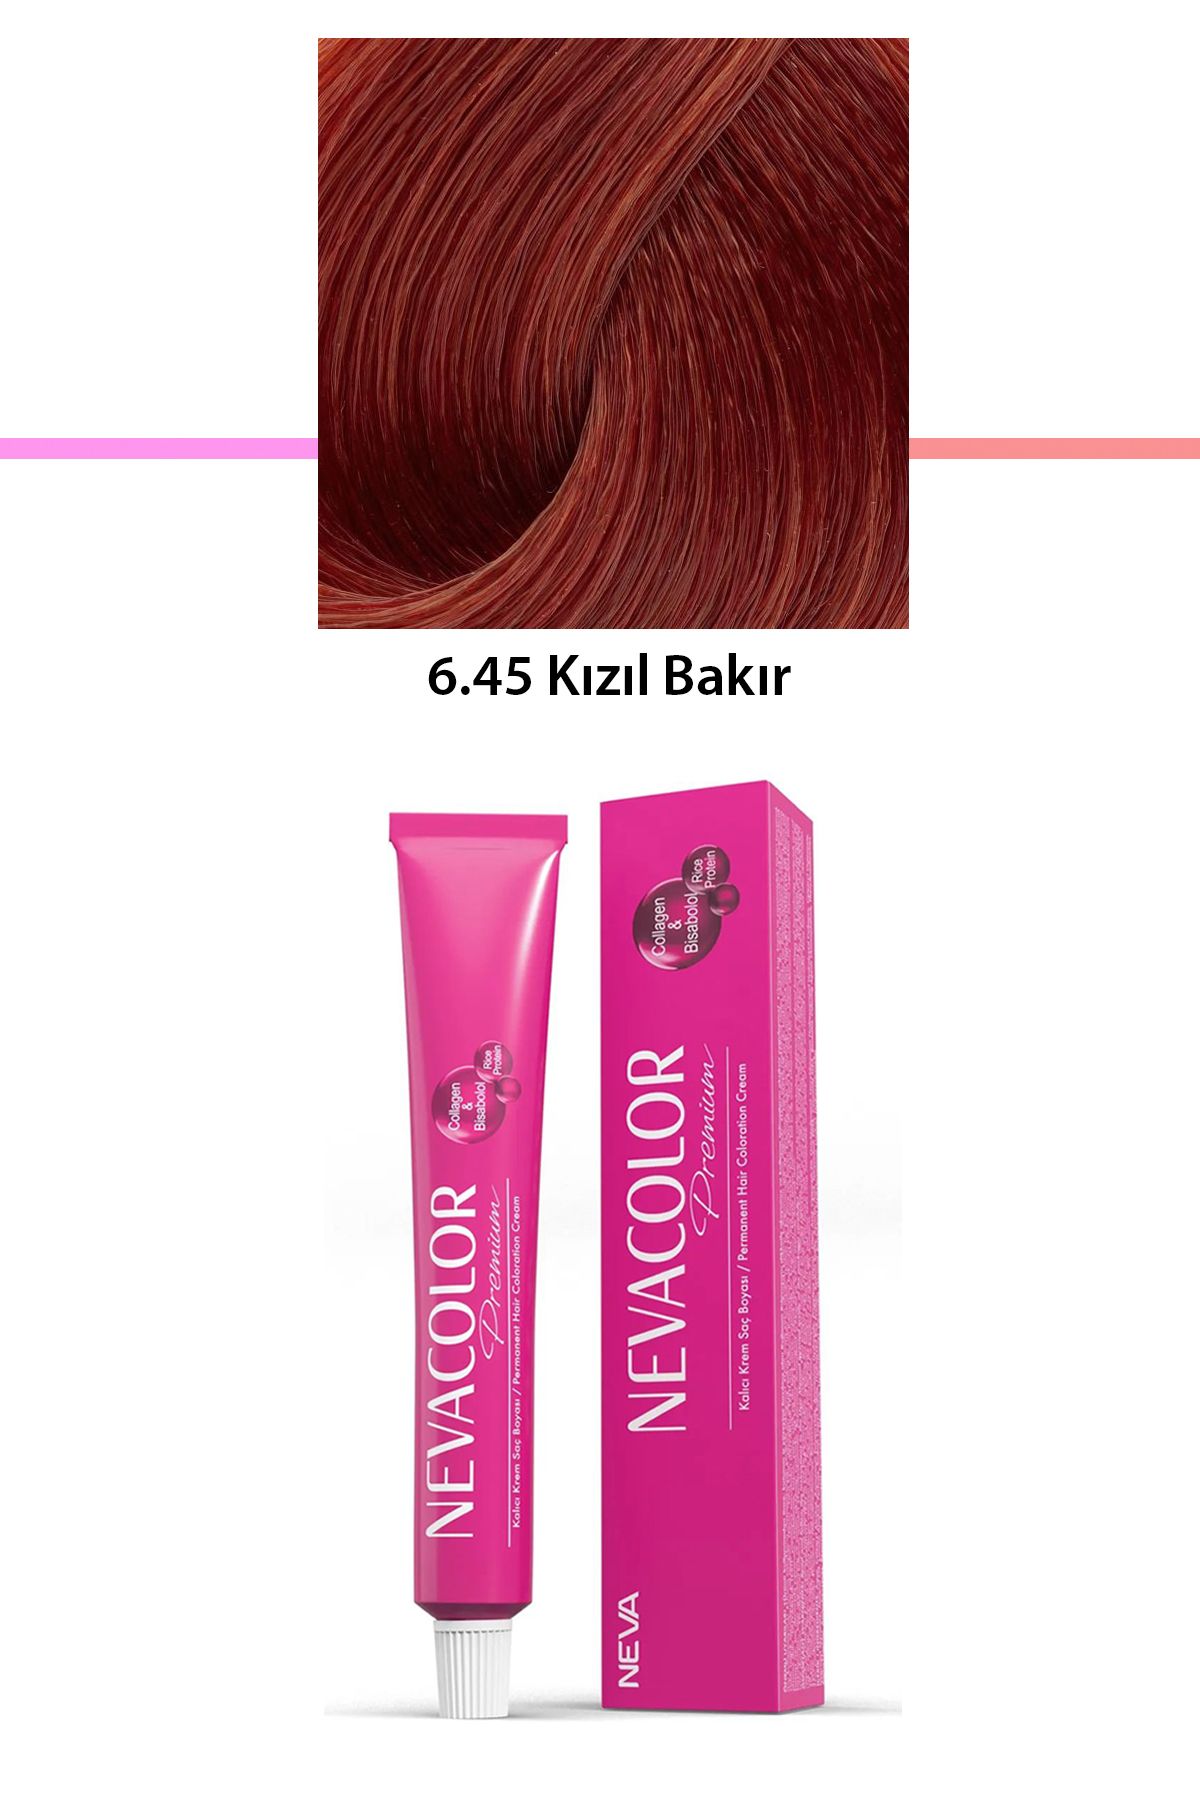 Neva Color Premium 6.45 Kızıl Bakır - Kalıcı Krem Saç Boyası 50 g Tüp